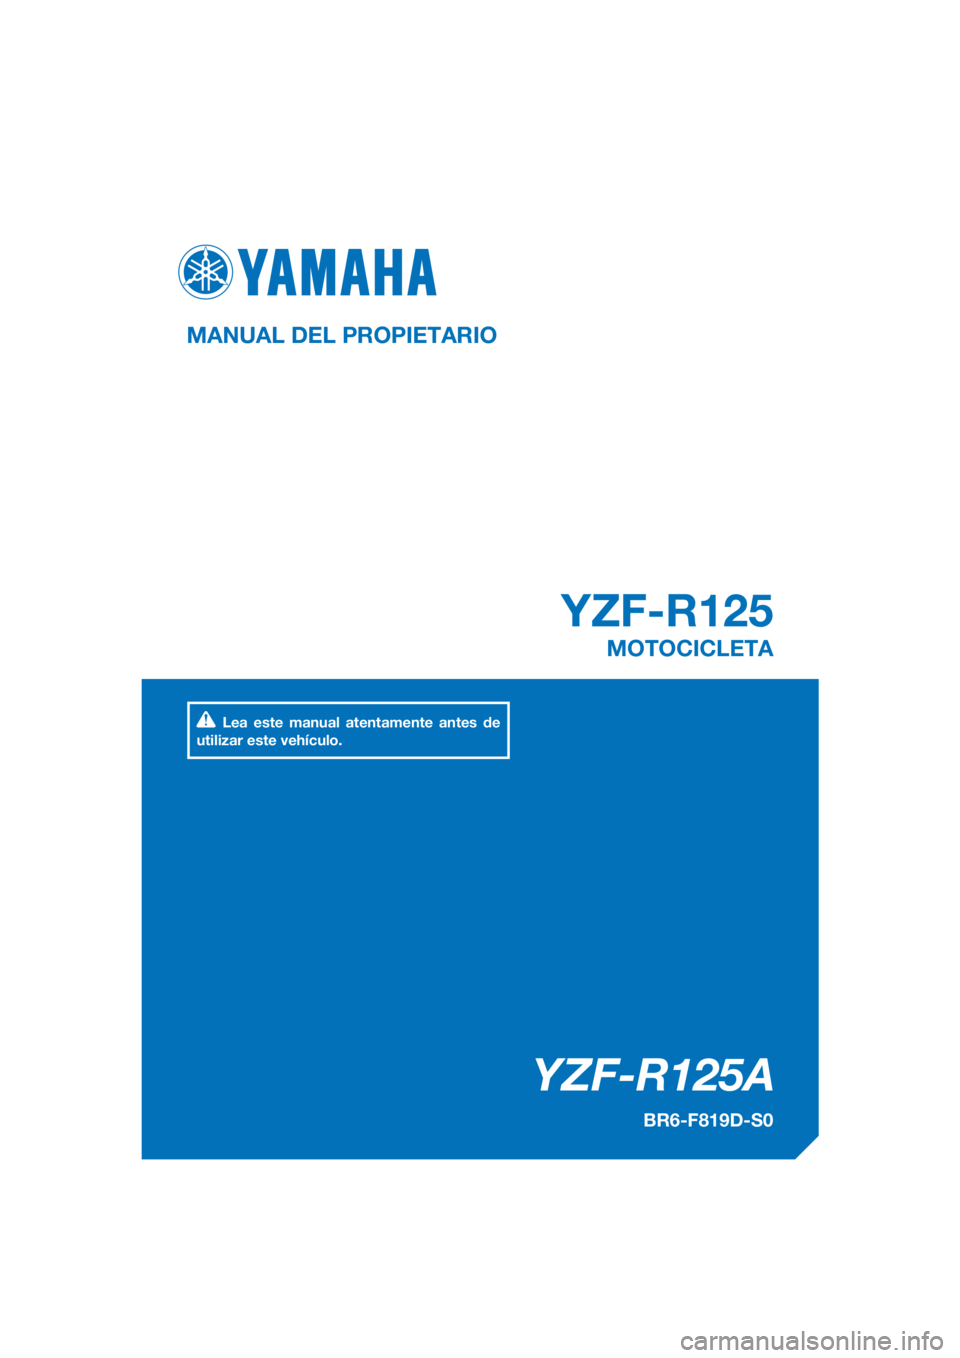 YAMAHA YZF-R125 2017  Manuale de Empleo (in Spanish) PANTONE285C
YZF-R125A
YZF-R125
MANUAL DEL PROPIETARIO
BR6-F819D-S0
MOTOCICLETA
Lea este manual atentamente antes de 
utilizar este vehículo.
[Spanish  (S)] 